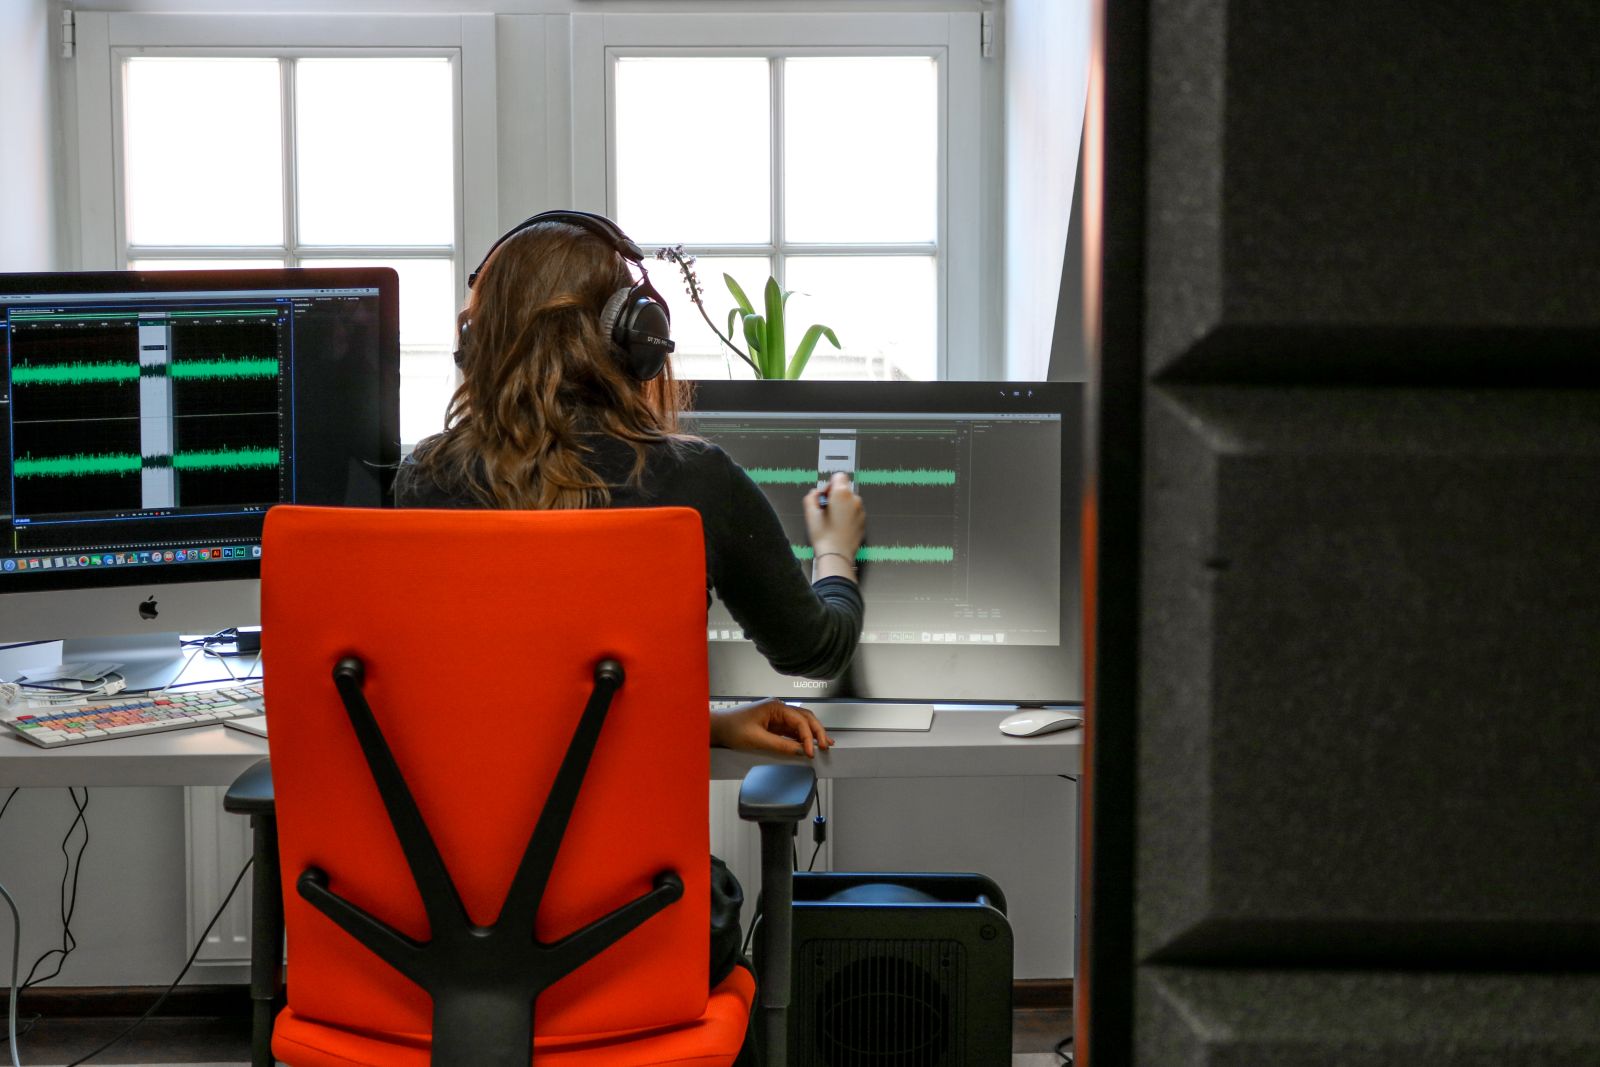 Młoda kobieta w słuchawkach siedzi tyłem do obiektywu na pomarańczowym krześle biurowym, przed nią dwa ekrany, na których wyświetla się ścieżka nagranego dźwięku.